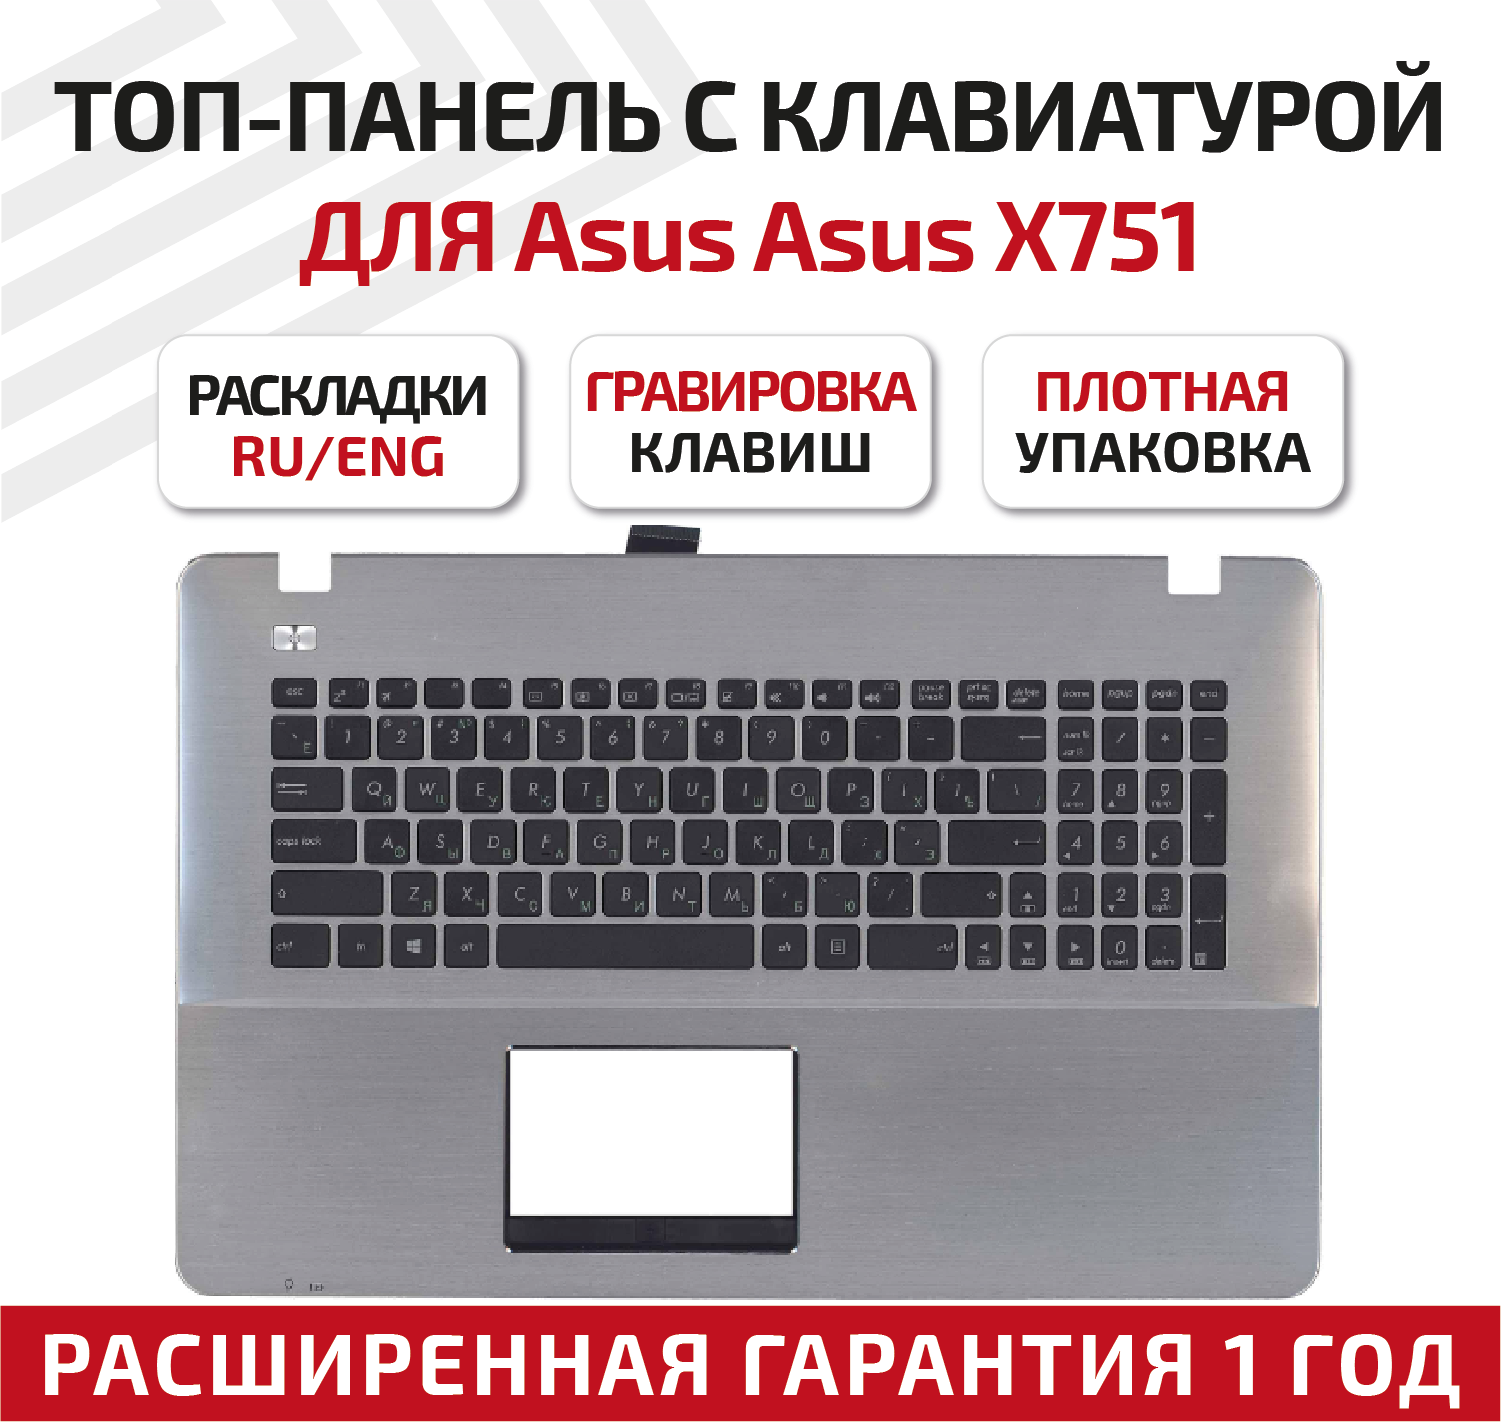 Клавиатура (keyboard) 90NB0601-R31RU0 для ноутбука Asus X751, X751MD, X751LA, X751LD, X751LB, топ-панель черно-серебристый